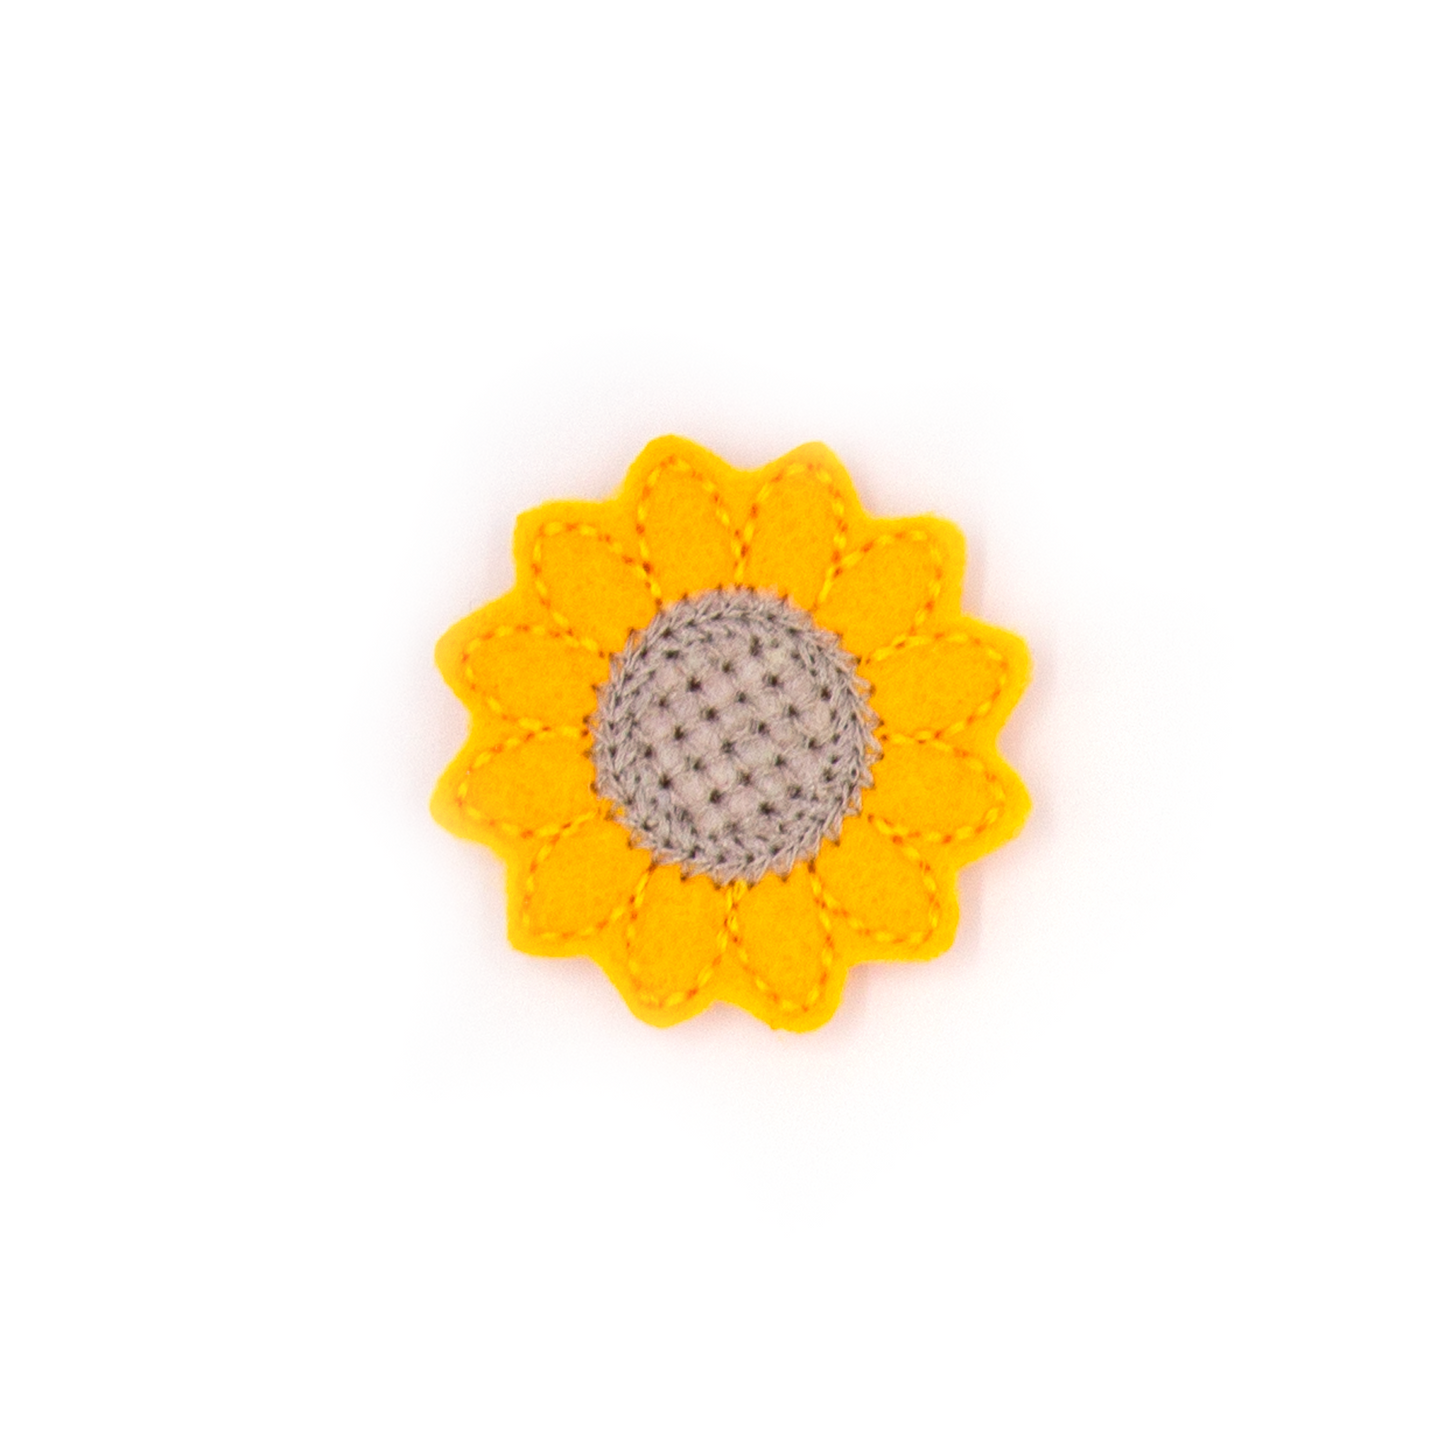 Sunflower Add-on